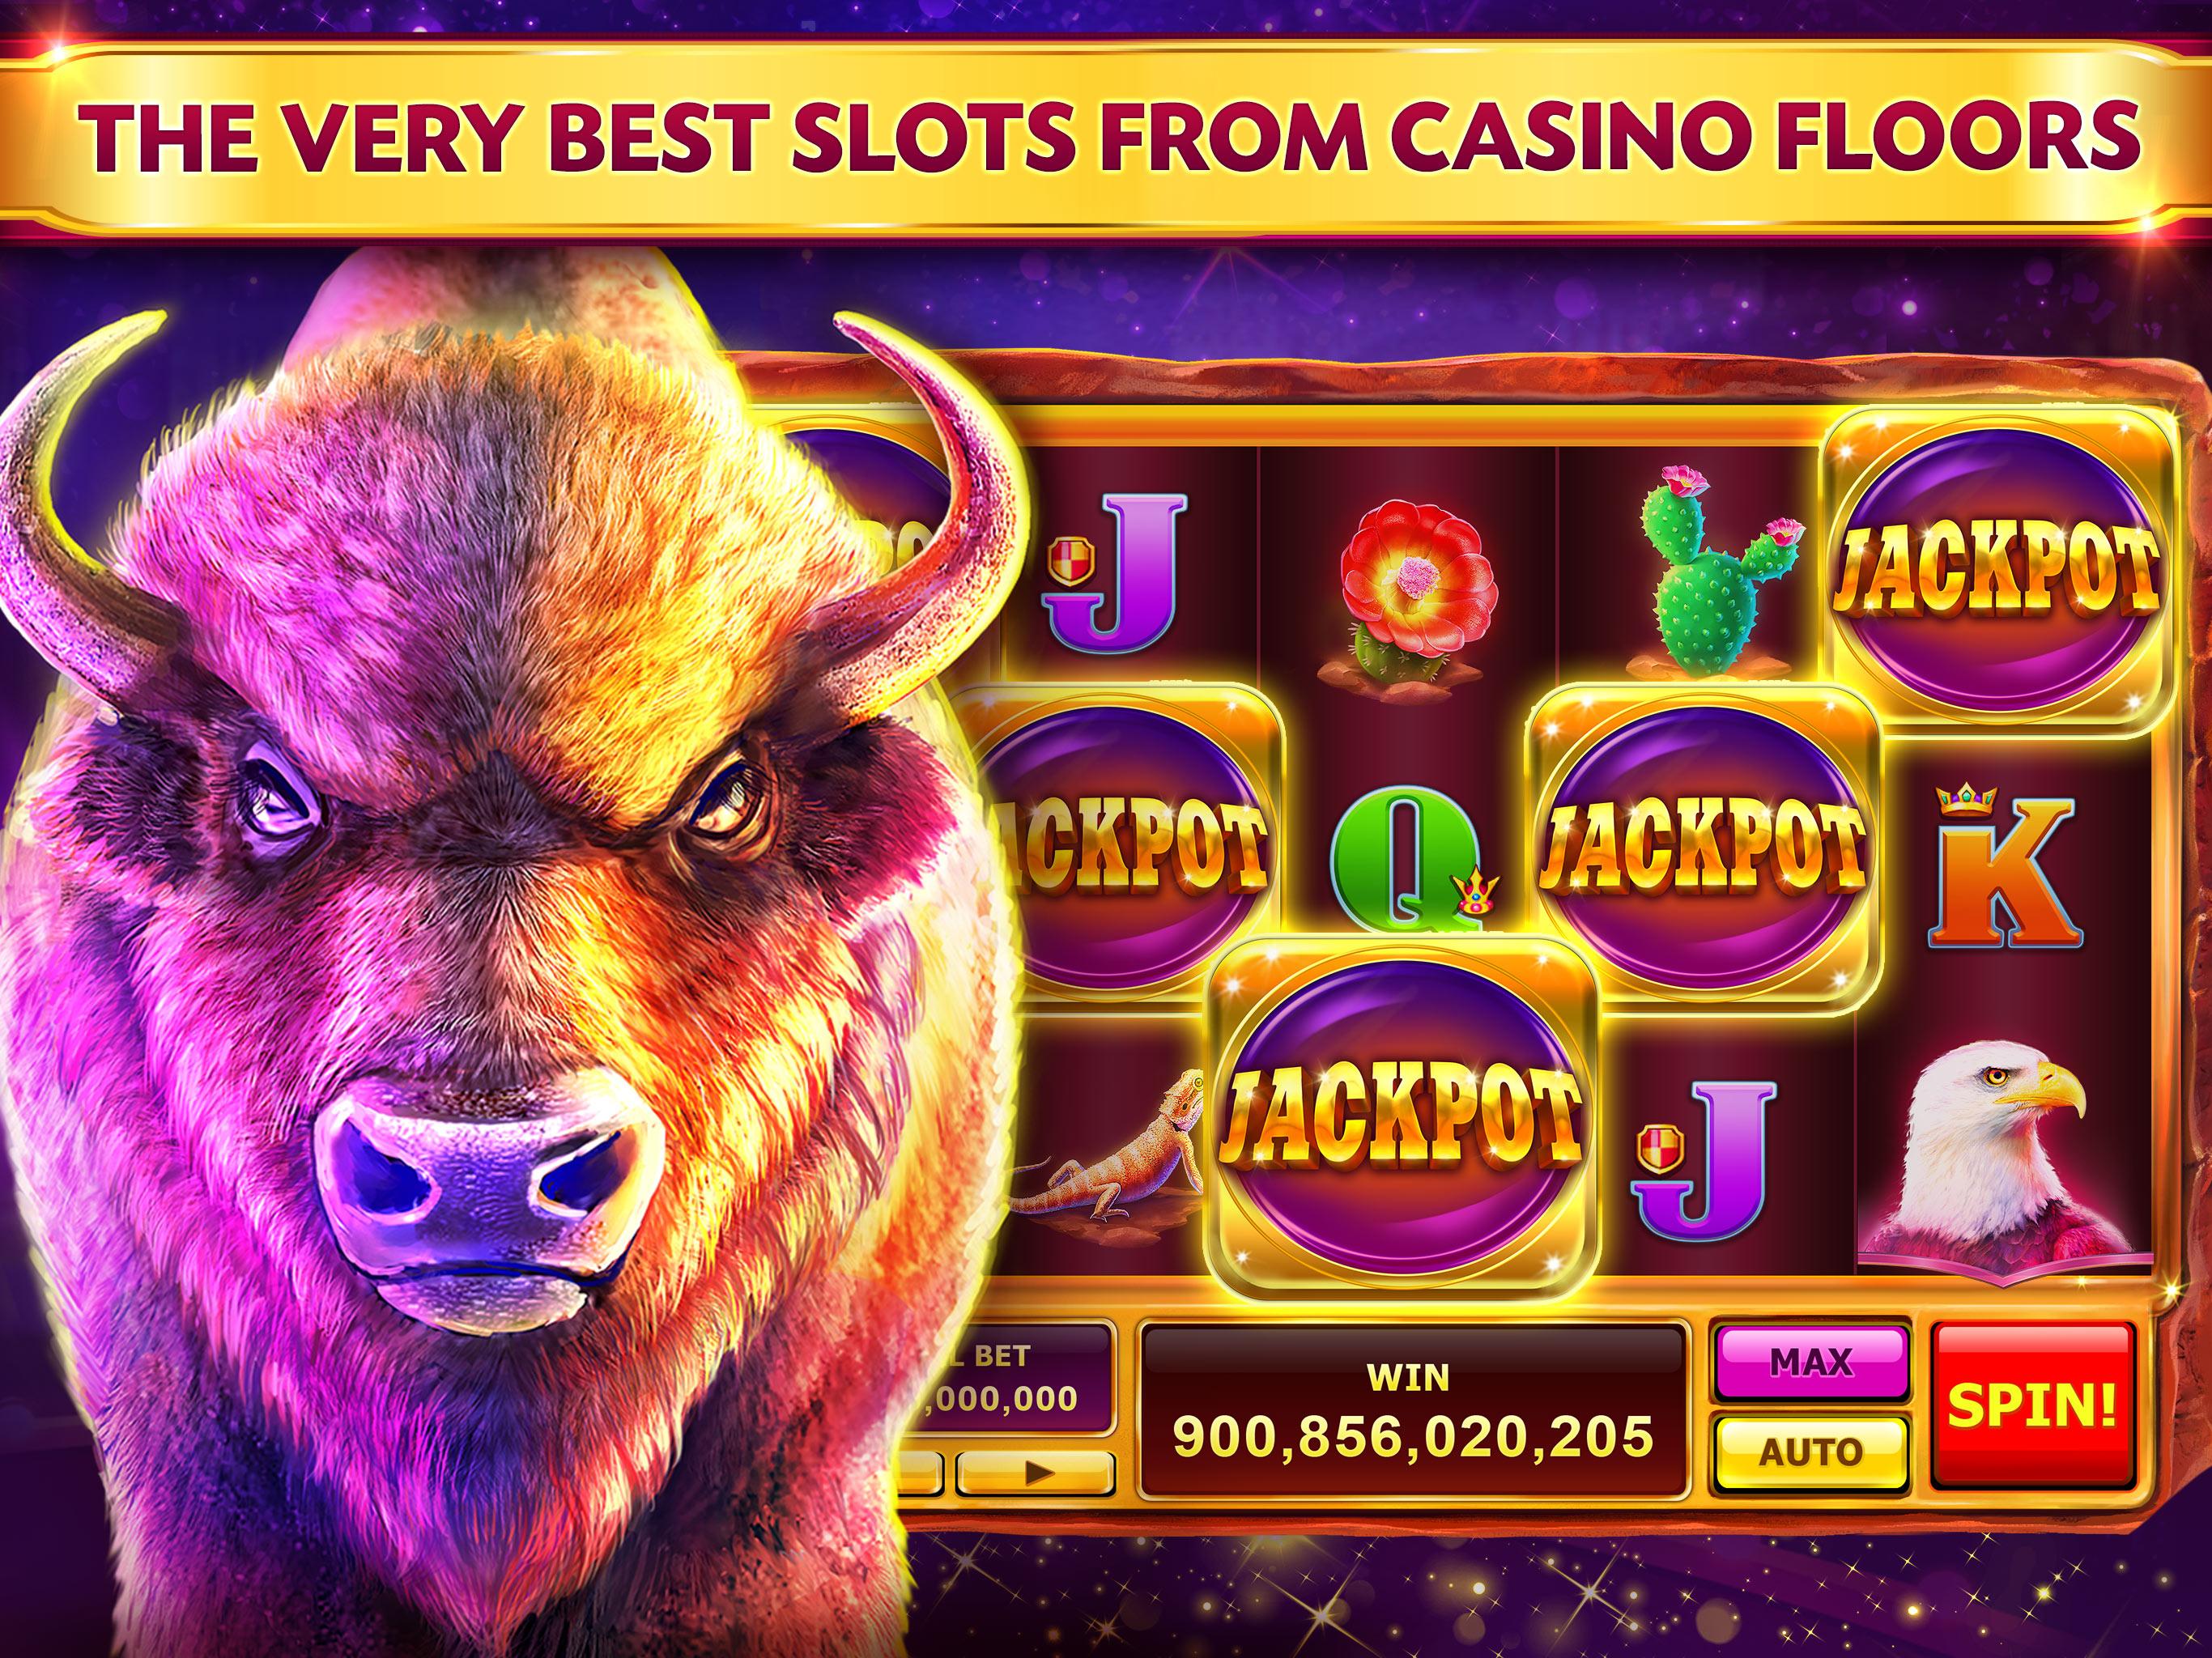 Free Casino Slot Machine Games To Play